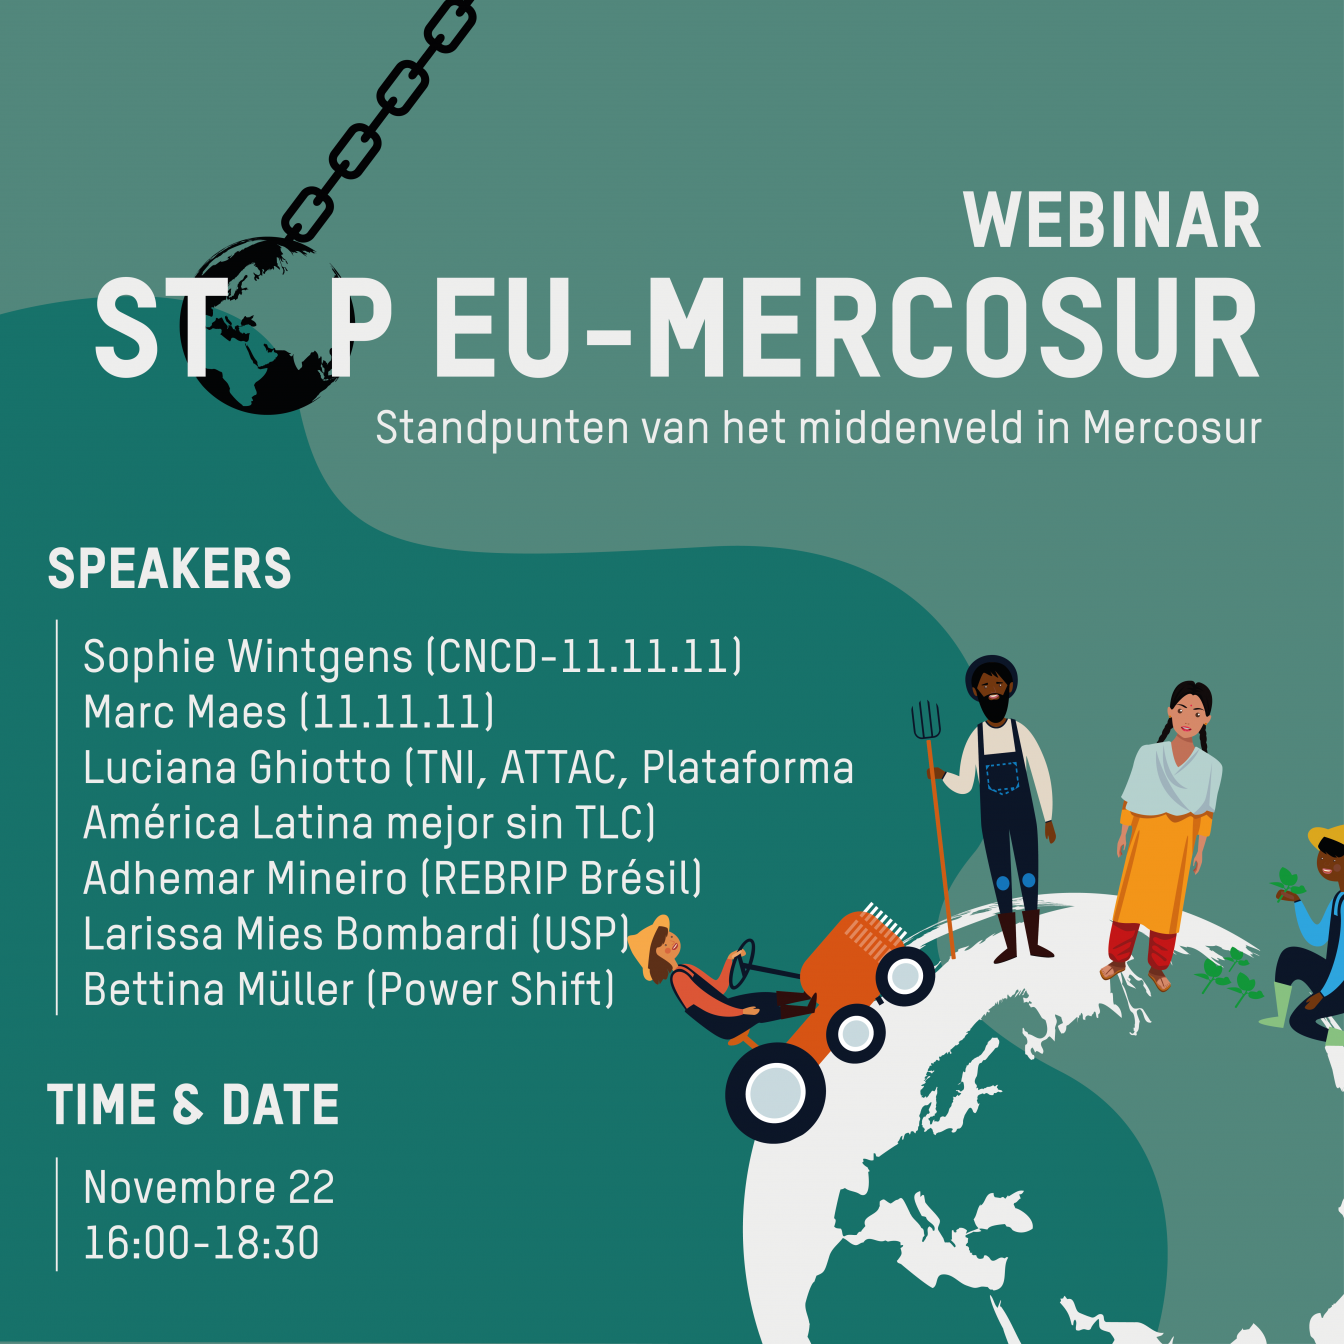 Advertentie Webinar Stop EU-Mercosur met oplijsting sprekers